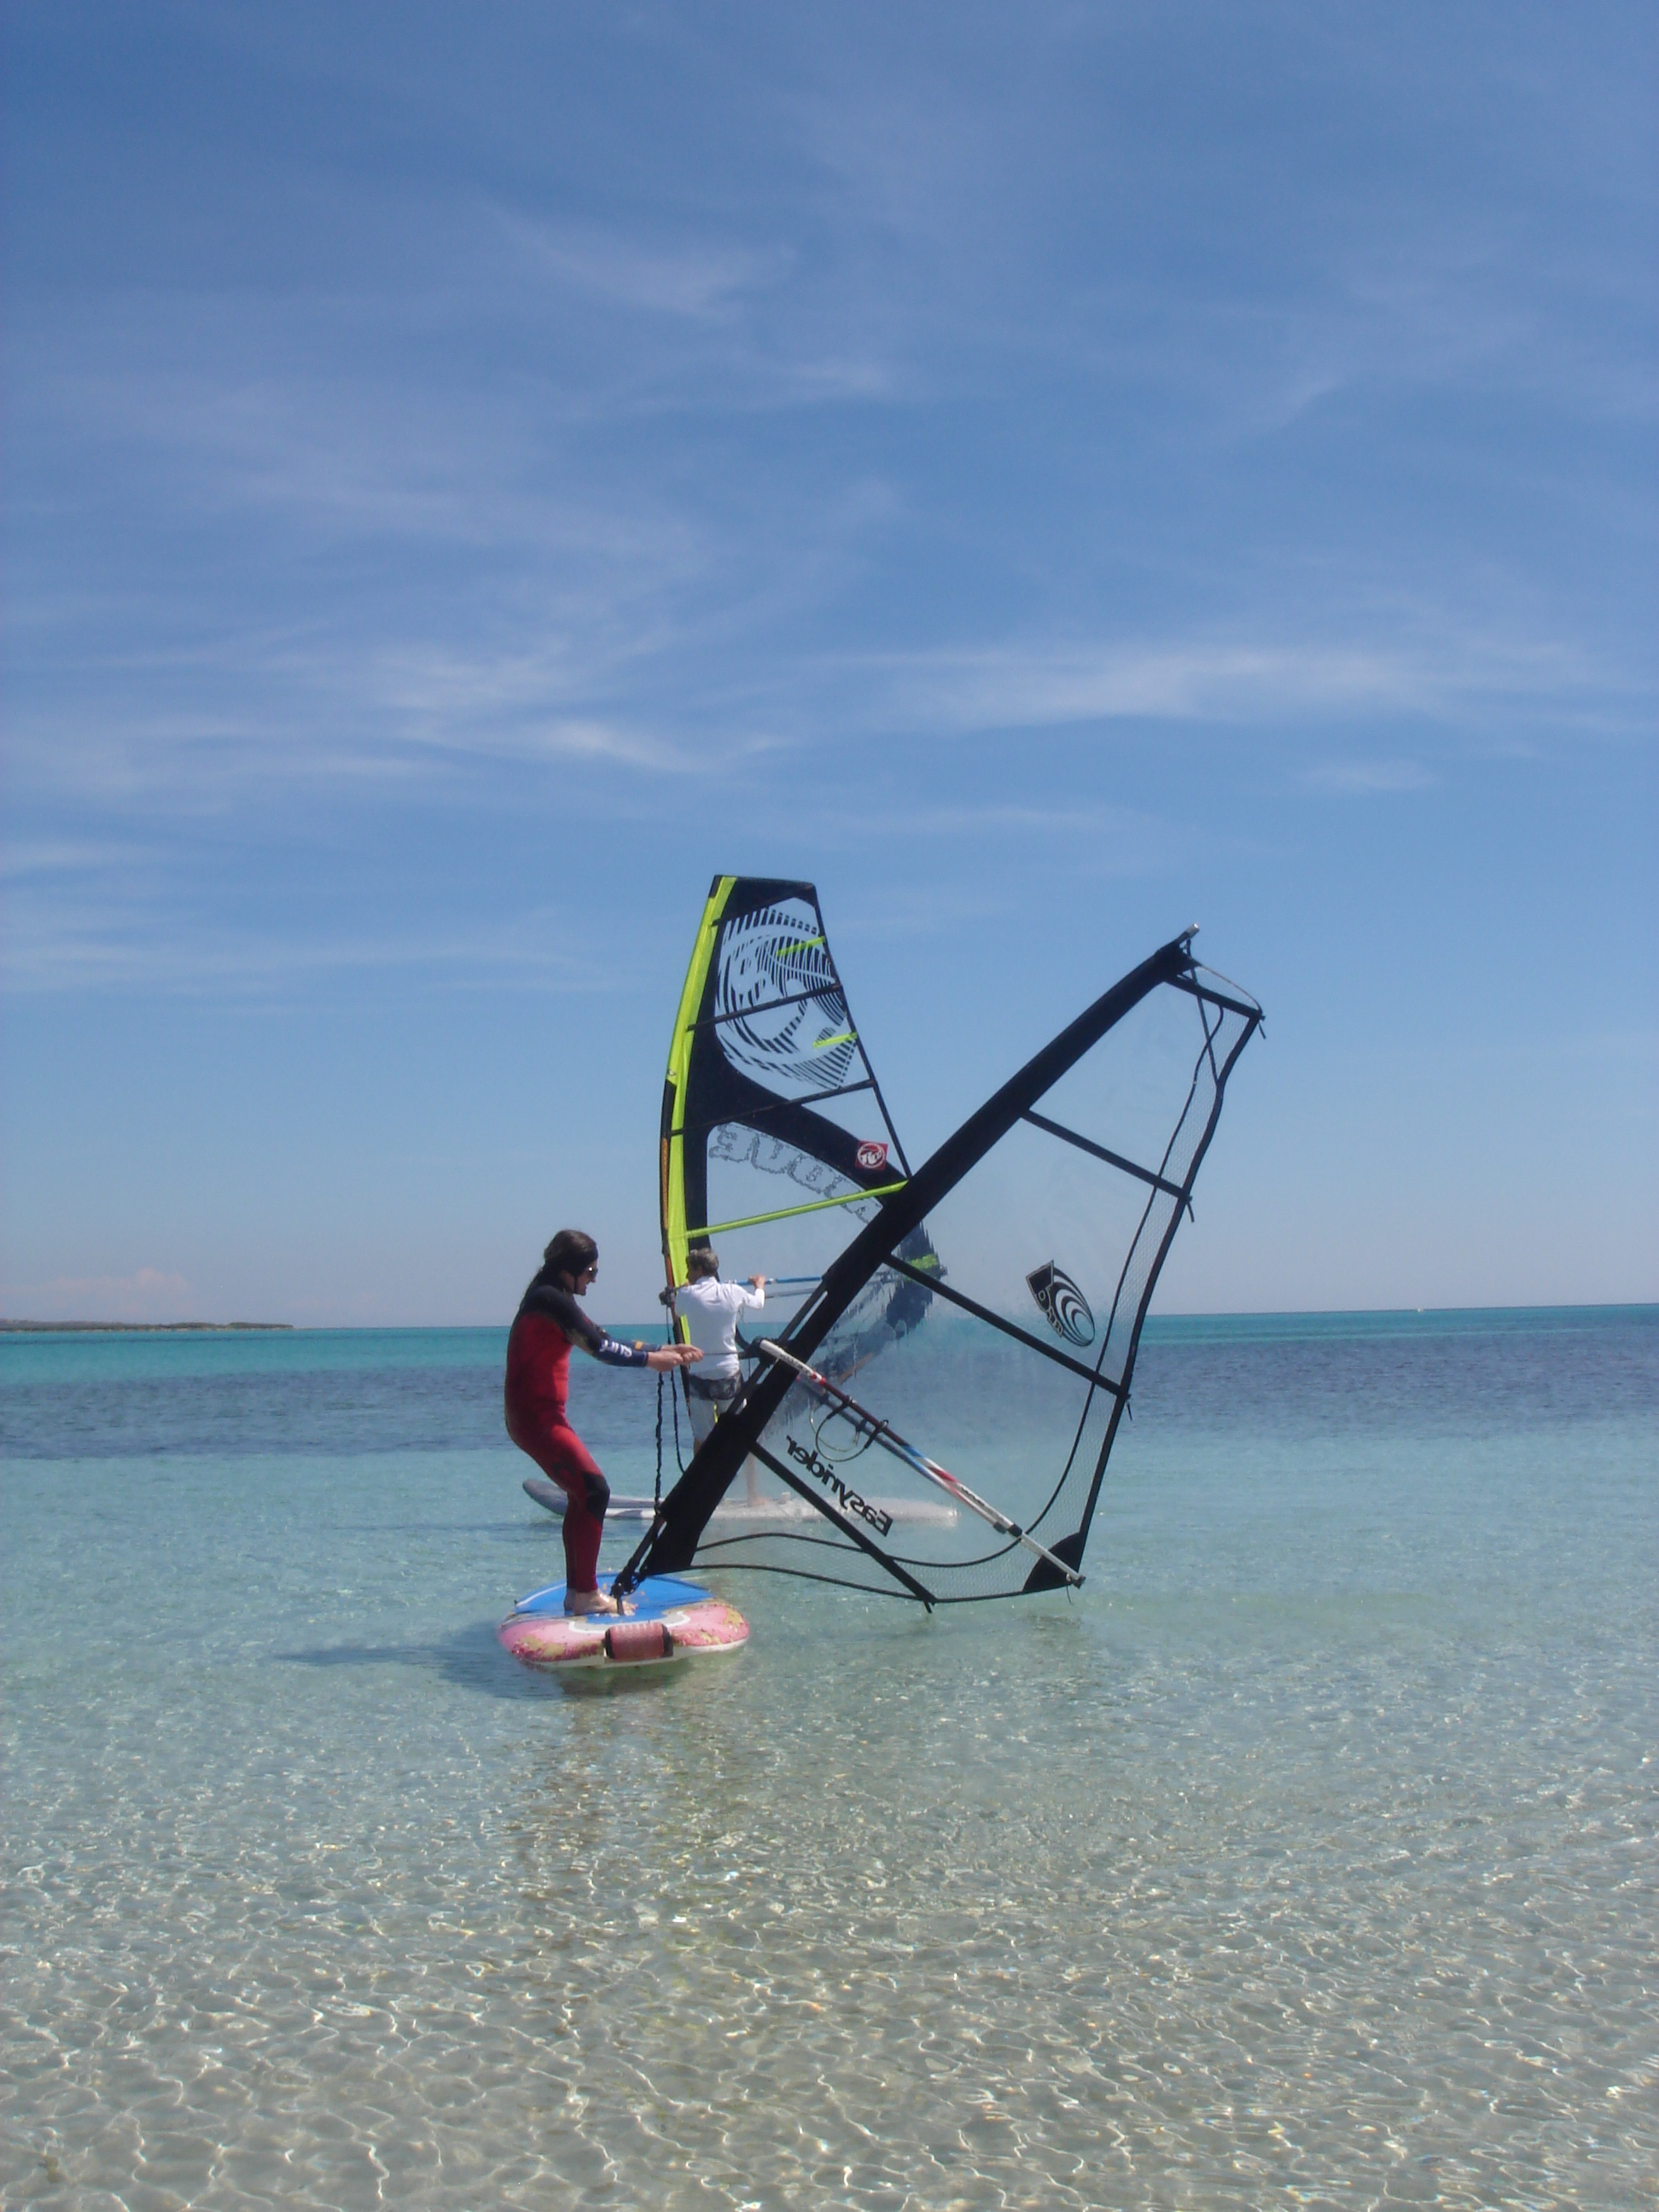 comment apprendre le windsurf